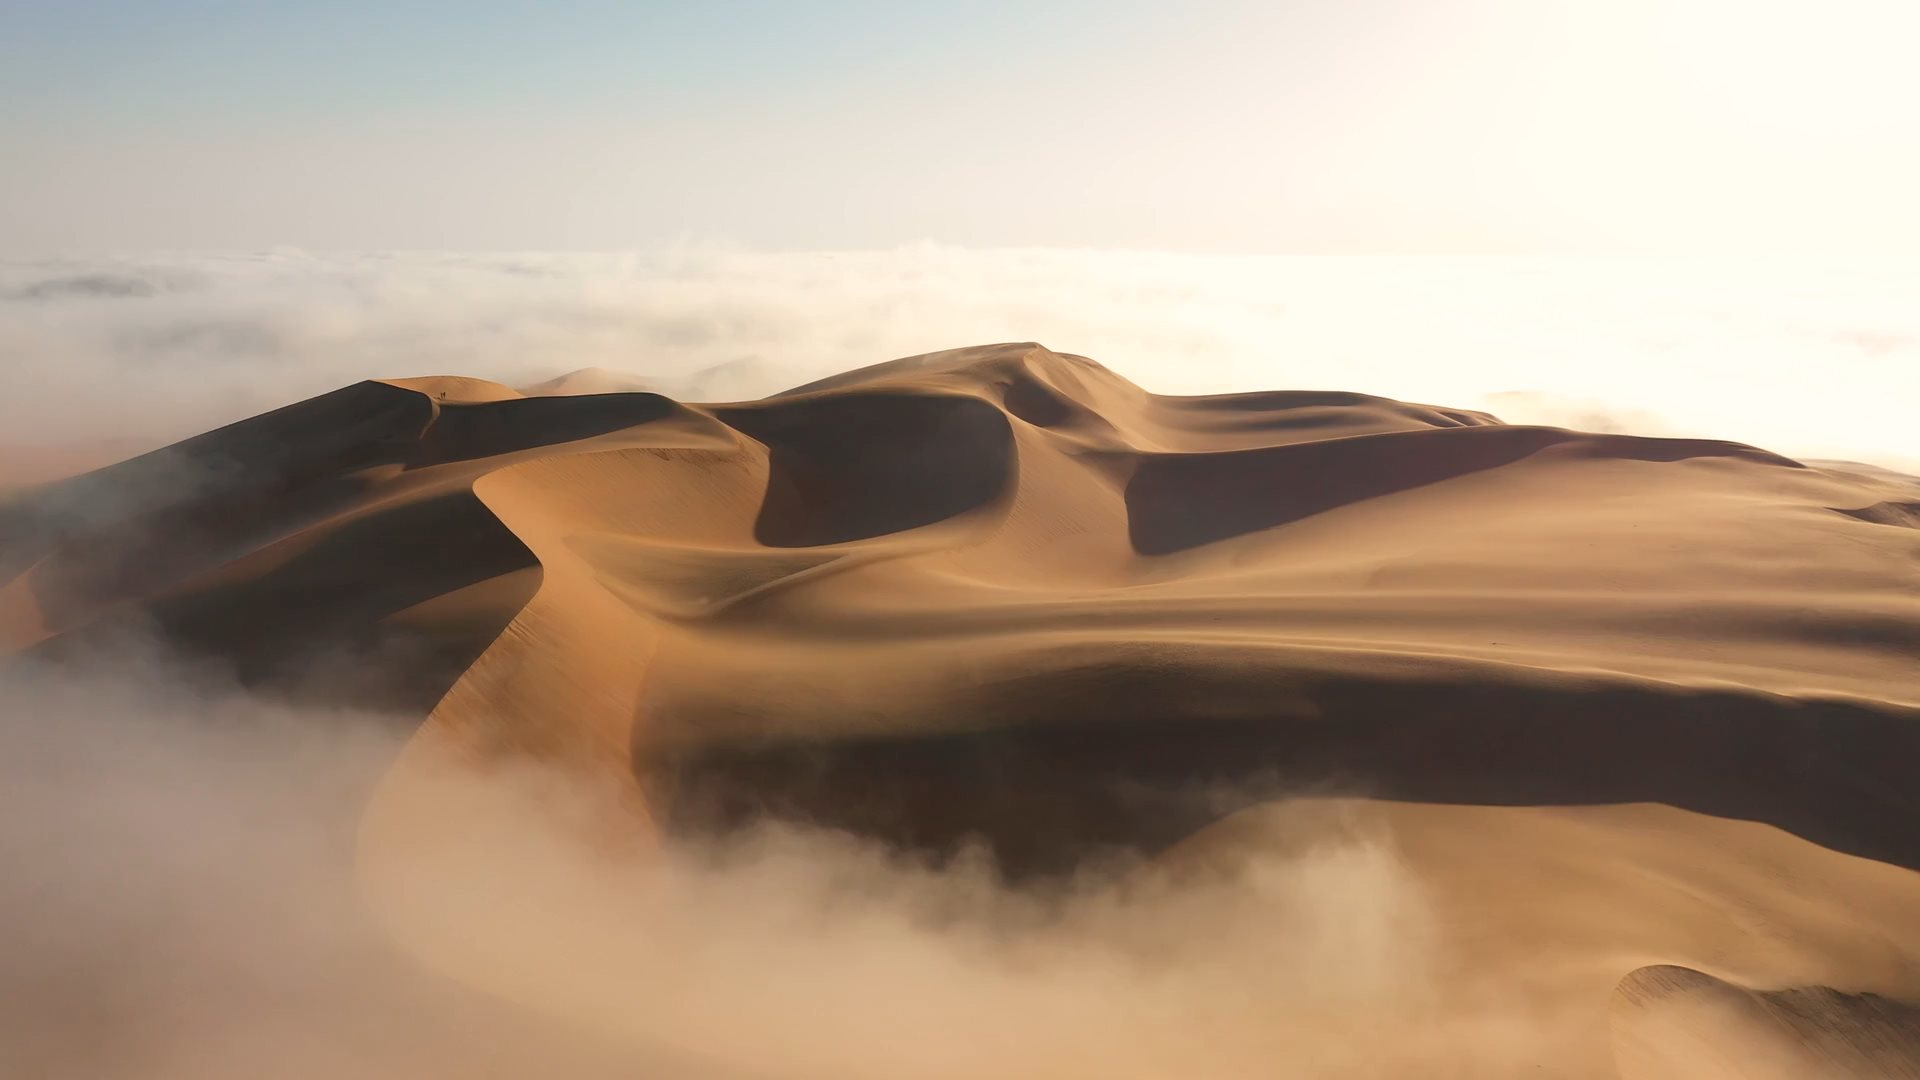 Video of the desert in the fog